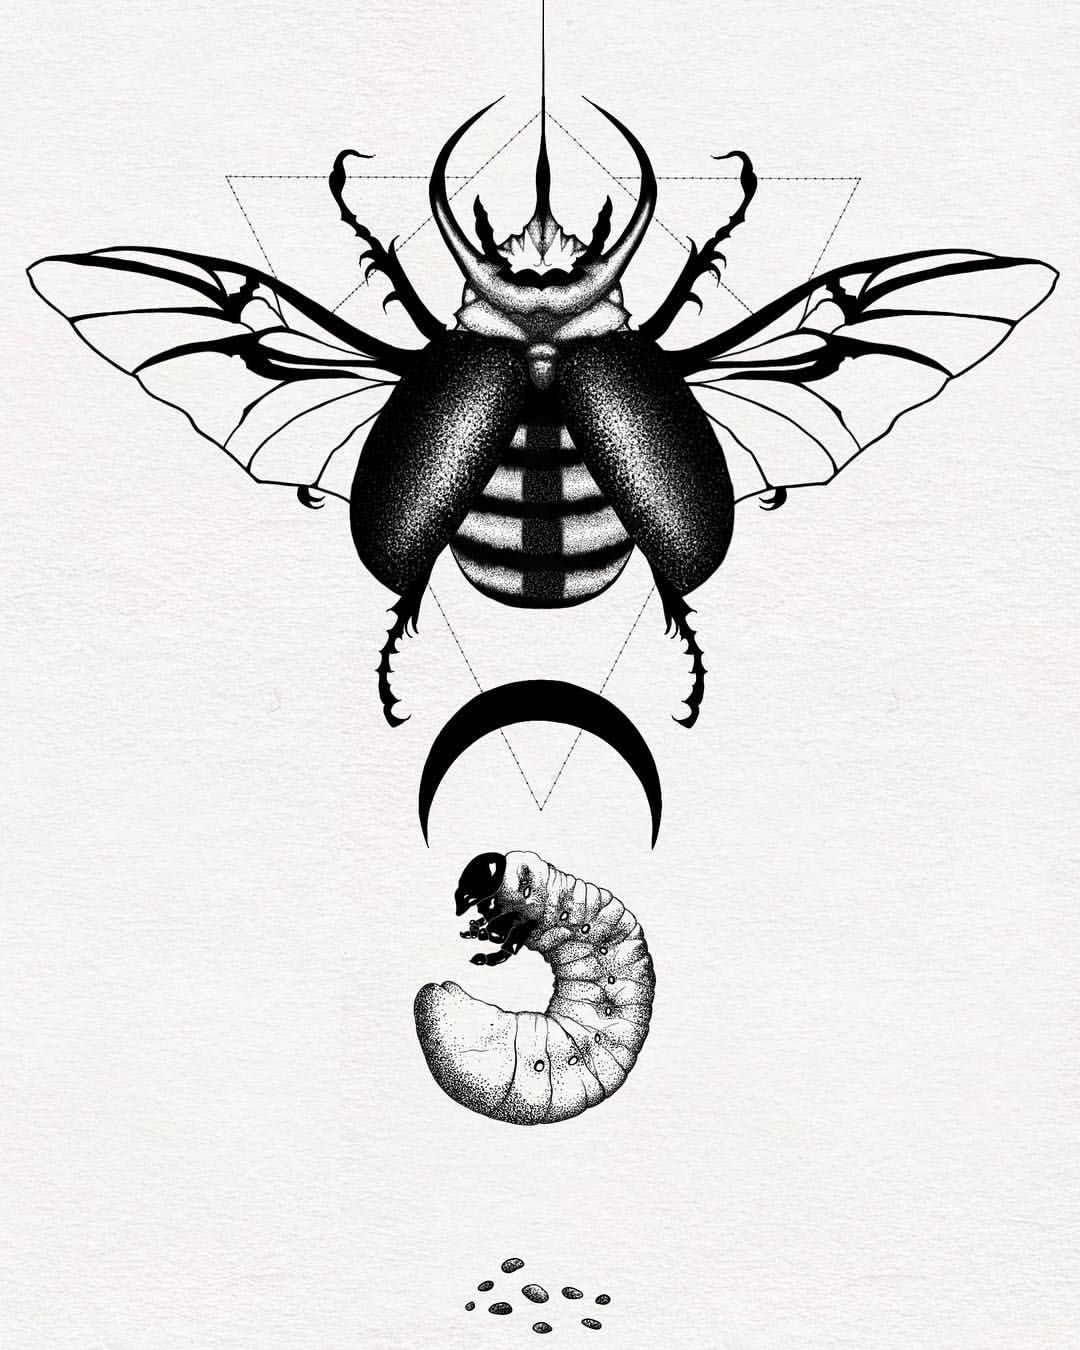 Татуировки насекомых эскизы